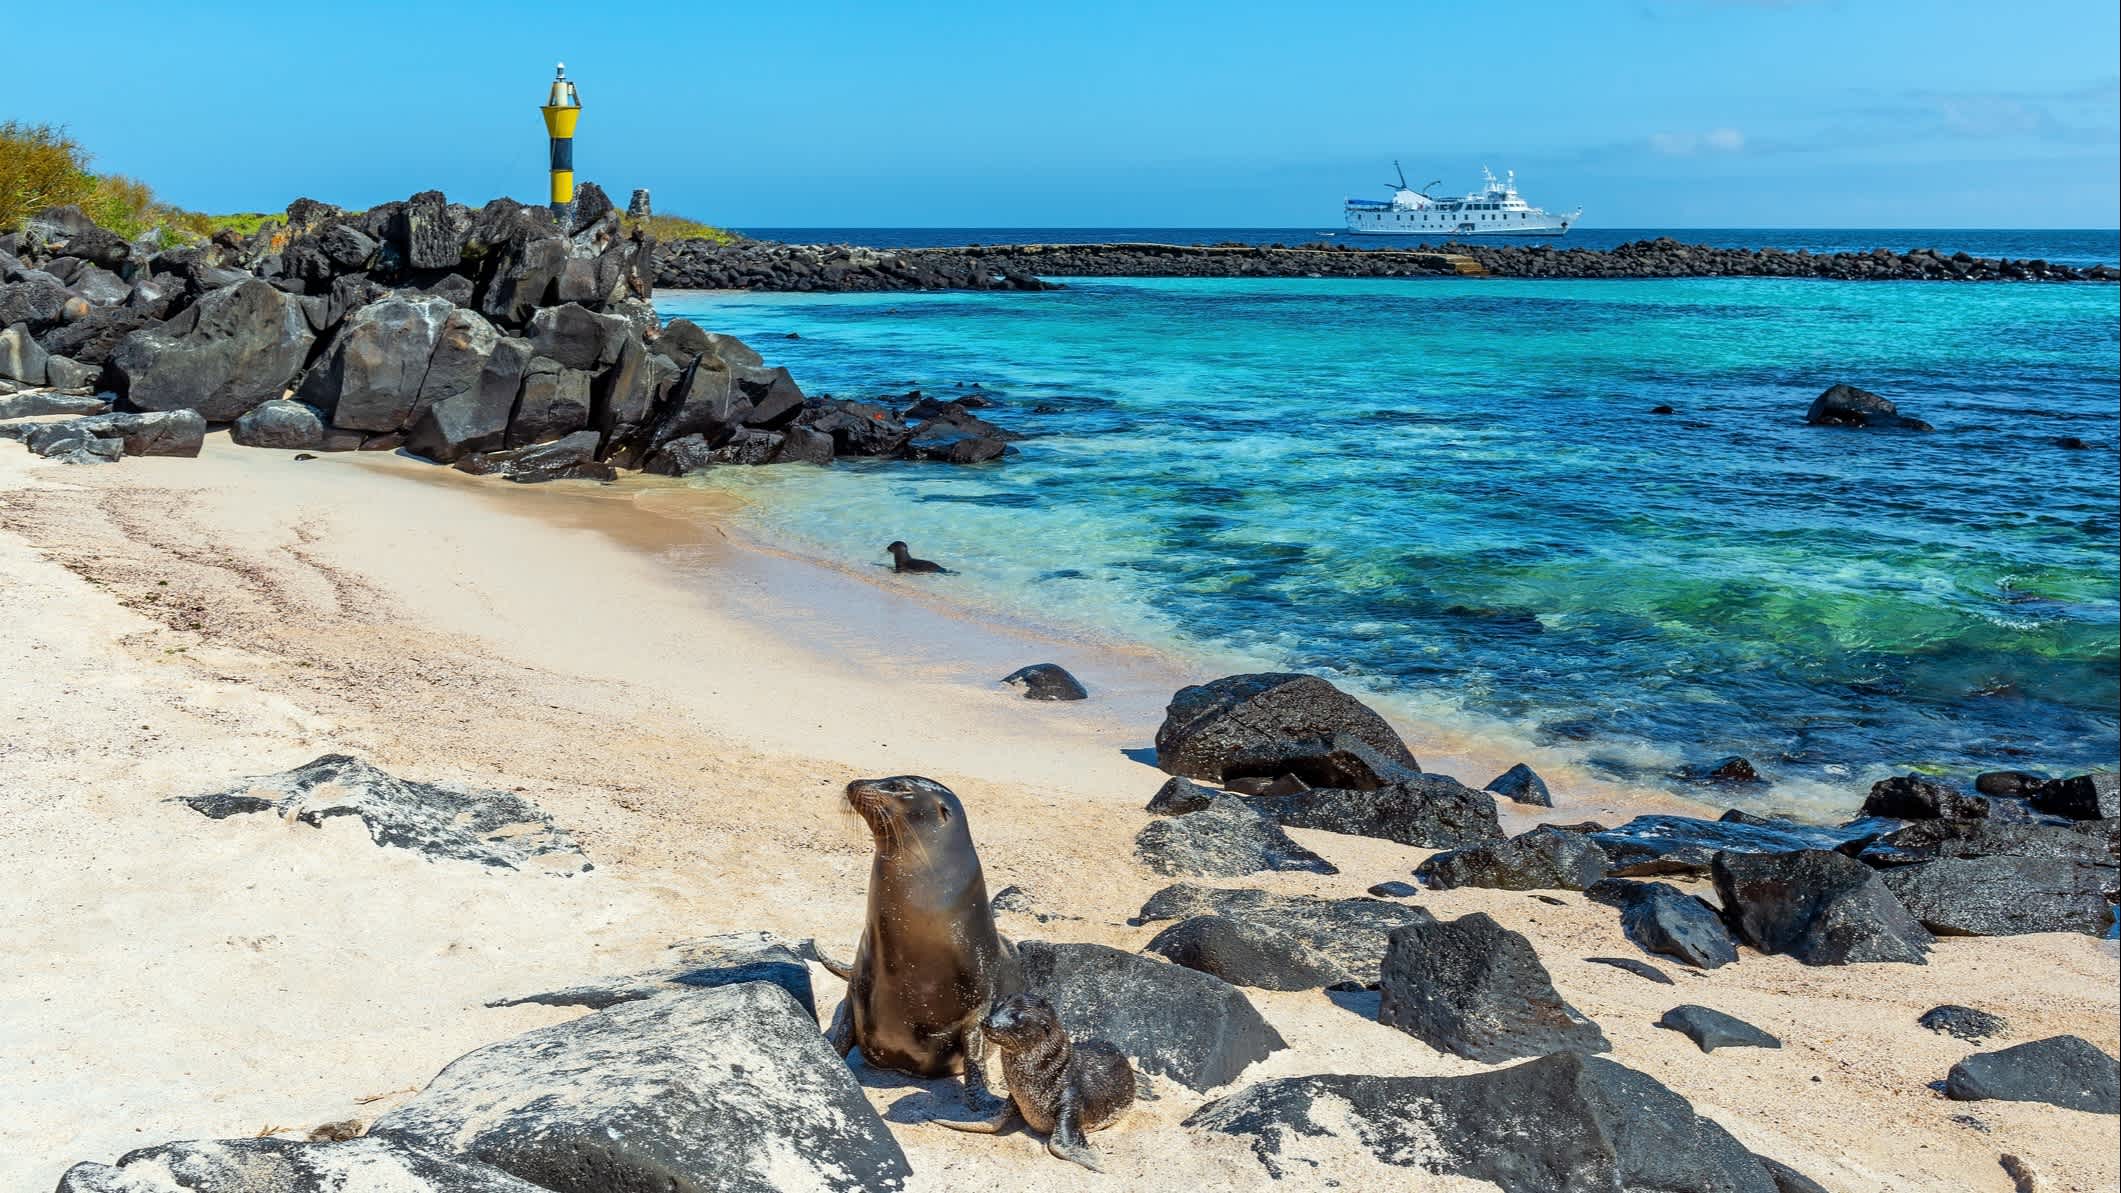 Lions de mer des Galapagos sur la plage avec un phare et un bateau de croisière en arrière-plan, sur l'île Espanola, Galapagos, Équateur.





Lions de mer des Galapagos sur la plage de l'île Espanola avec un phare et un bateau de croisière, Galapagos, Équateur.


